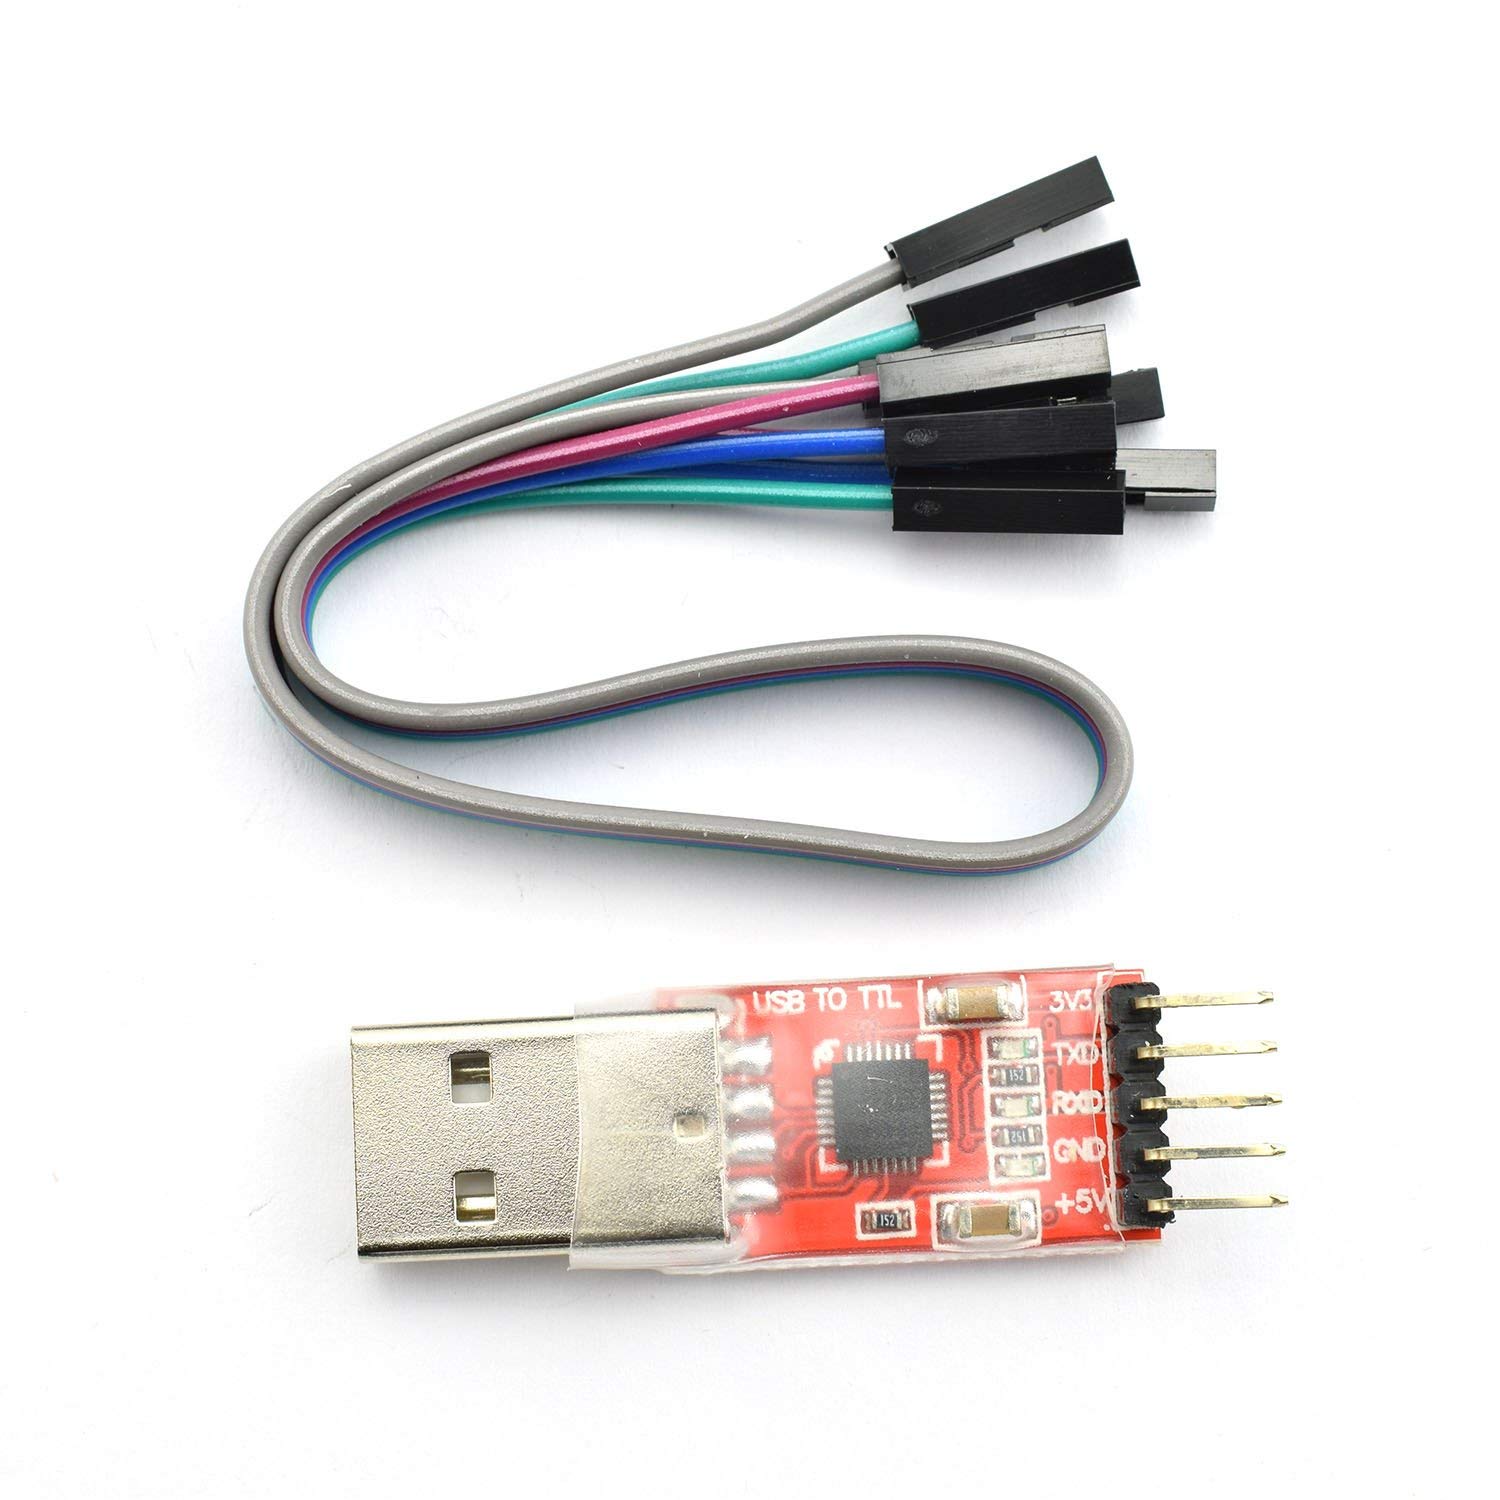 Cómo conectar a la consola de Raspberry Pi USB por puerto serie